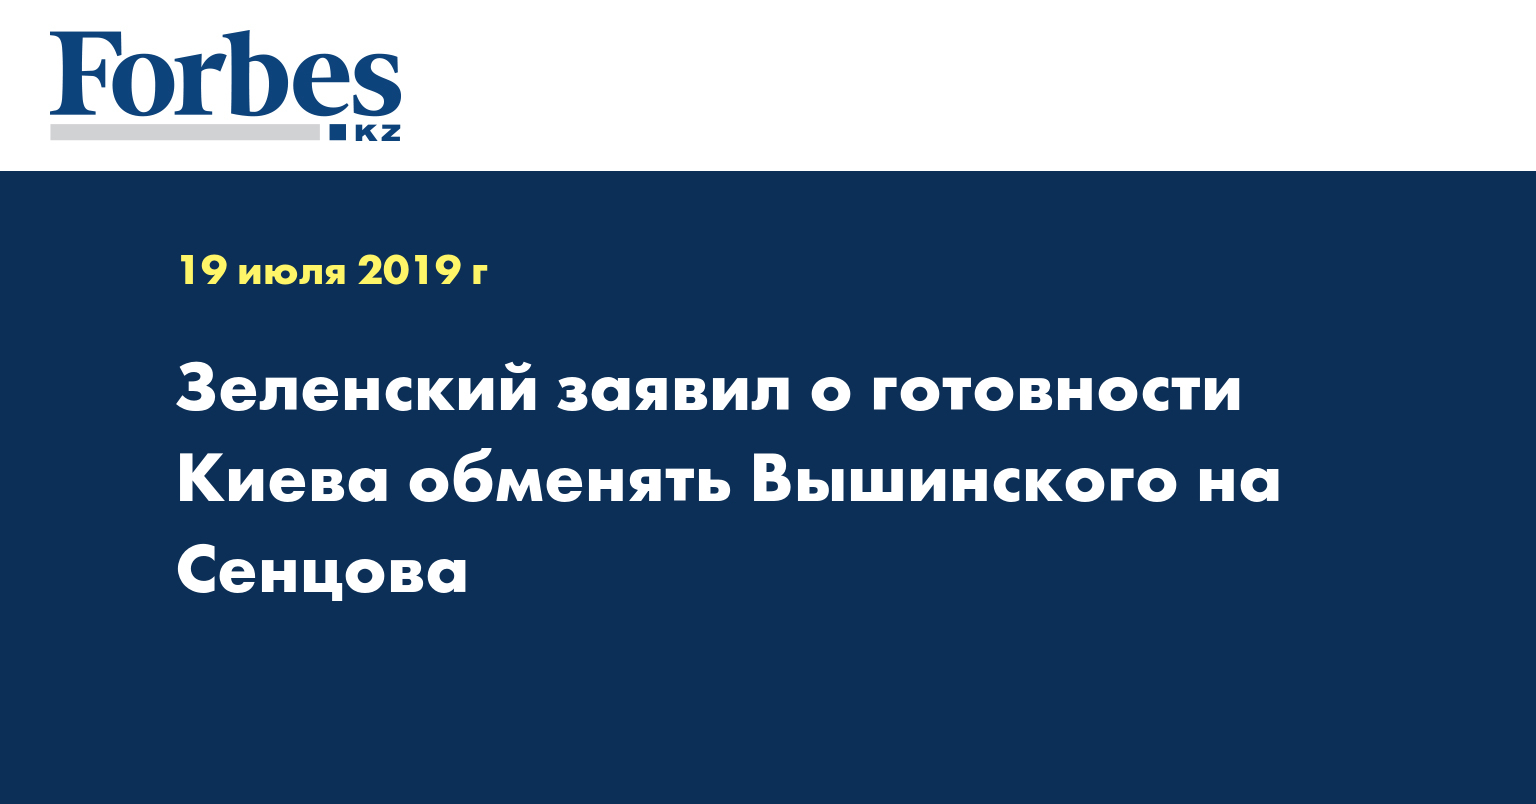 Зеленский заявил о готовности Киева обменять Вышинского на Сенцова